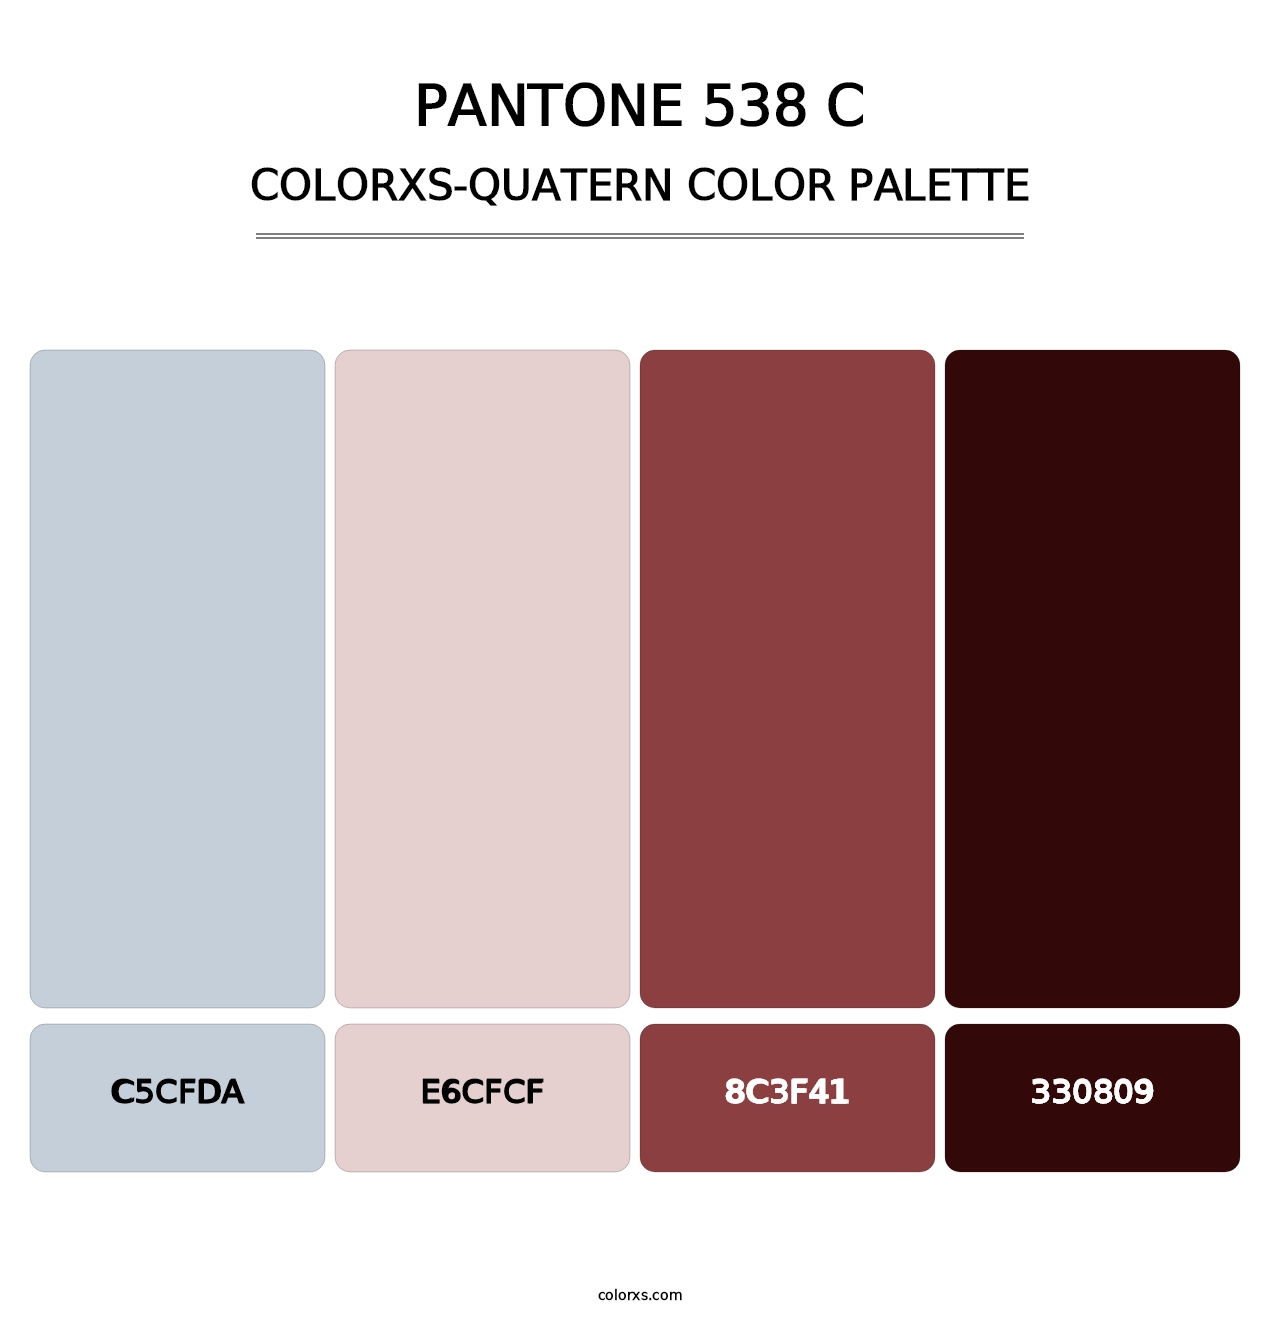 PANTONE 538 C - Colorxs Quatern Palette